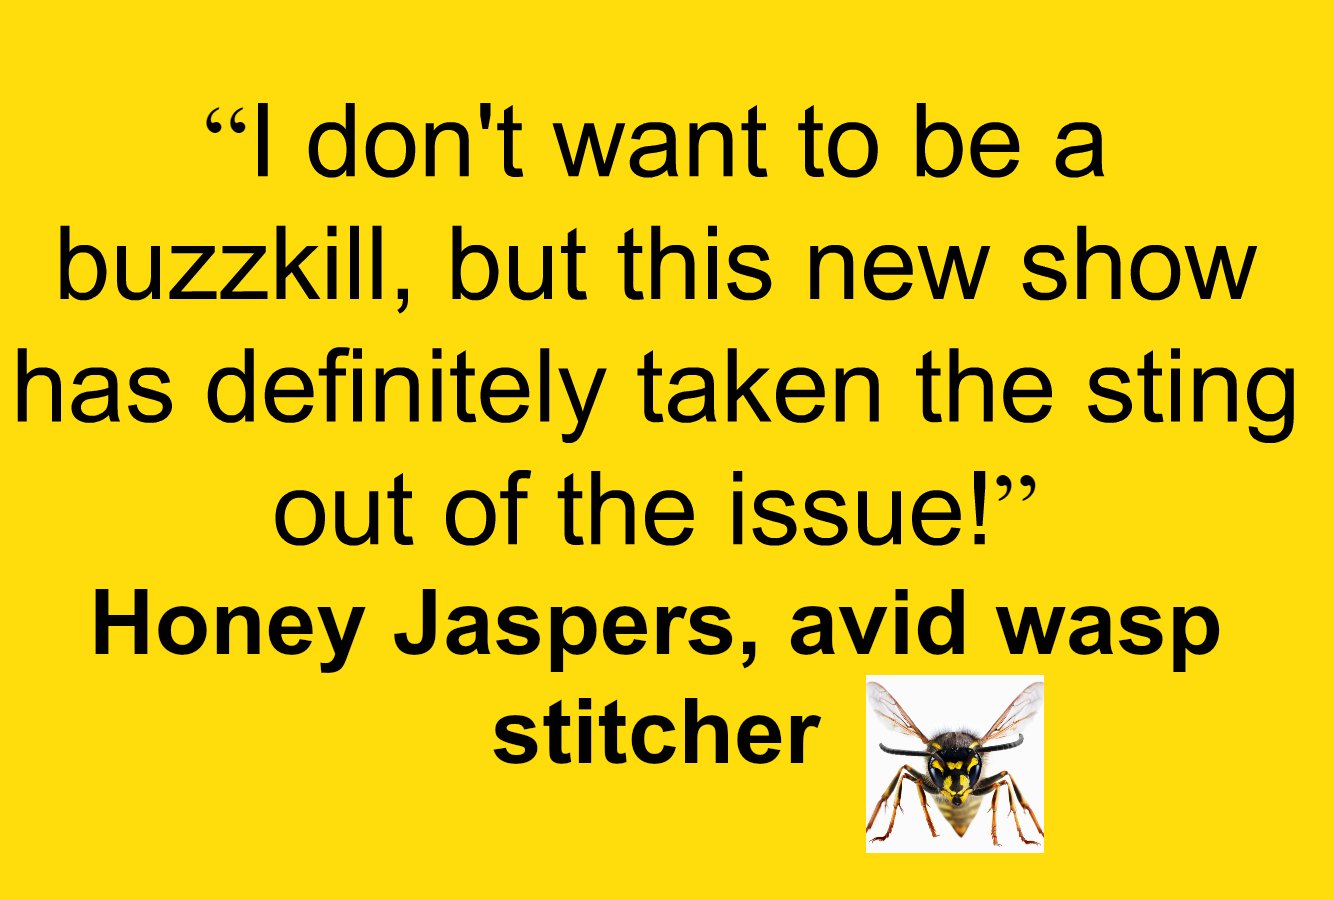 Wasp stitcher